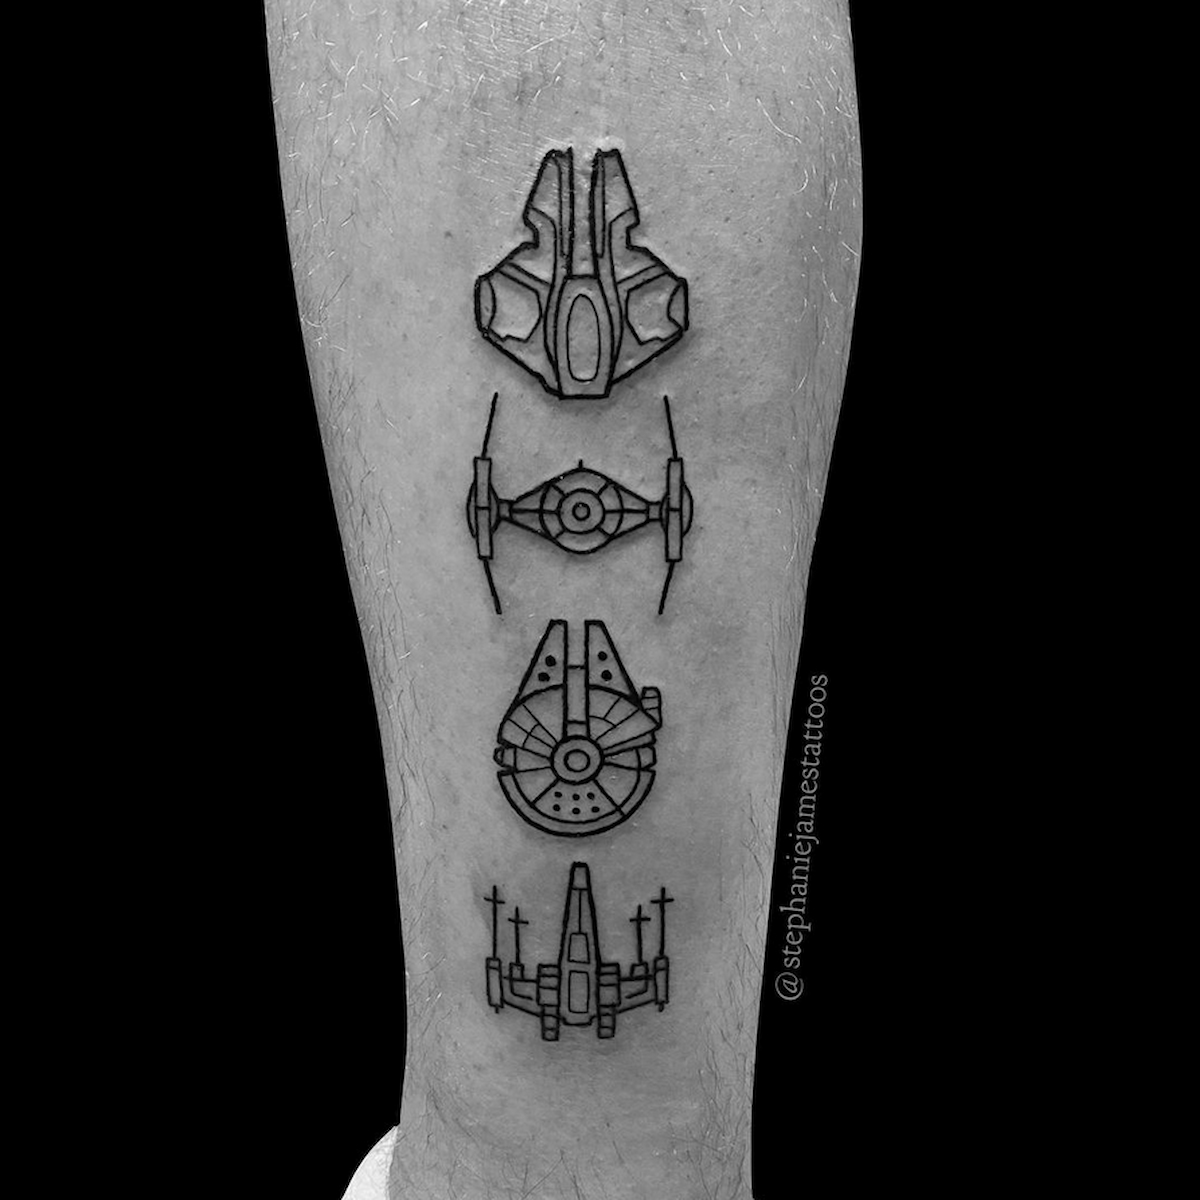 Basic Star Wars  Space Flash Sheet  Sharpie tattoos Doodle tattoo Small  tattoo designs